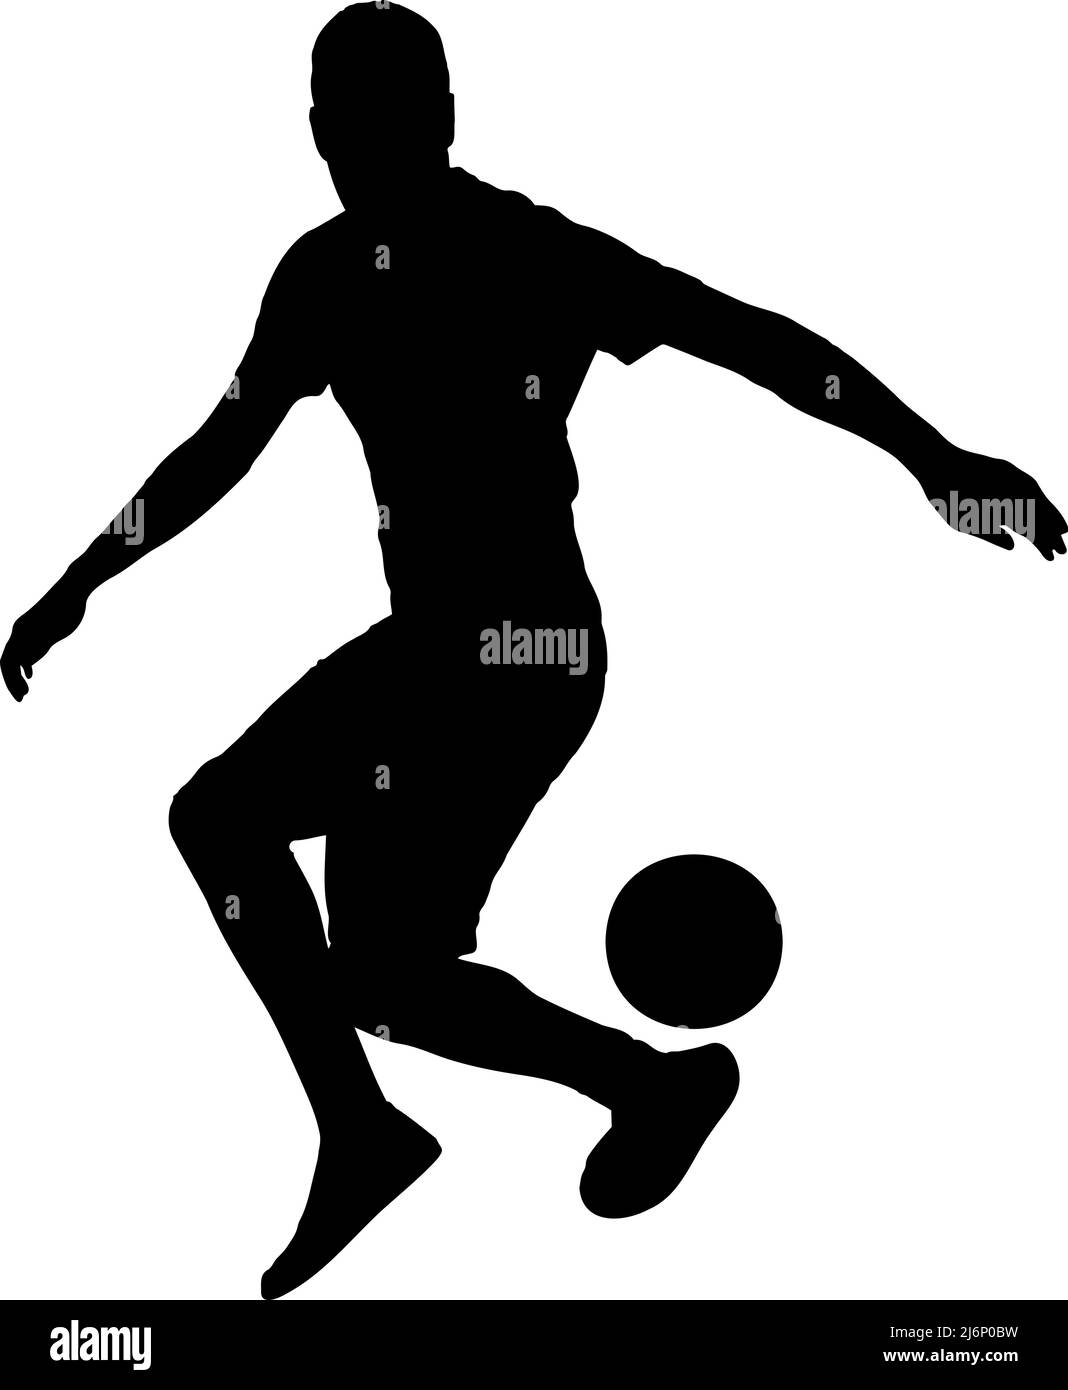 Jonglez avec une silhouette de ballon de football, football, homme ballon rebondir concept de silhouette, sport idée, couleur noire isolée sur fond blanc Illustration de Vecteur